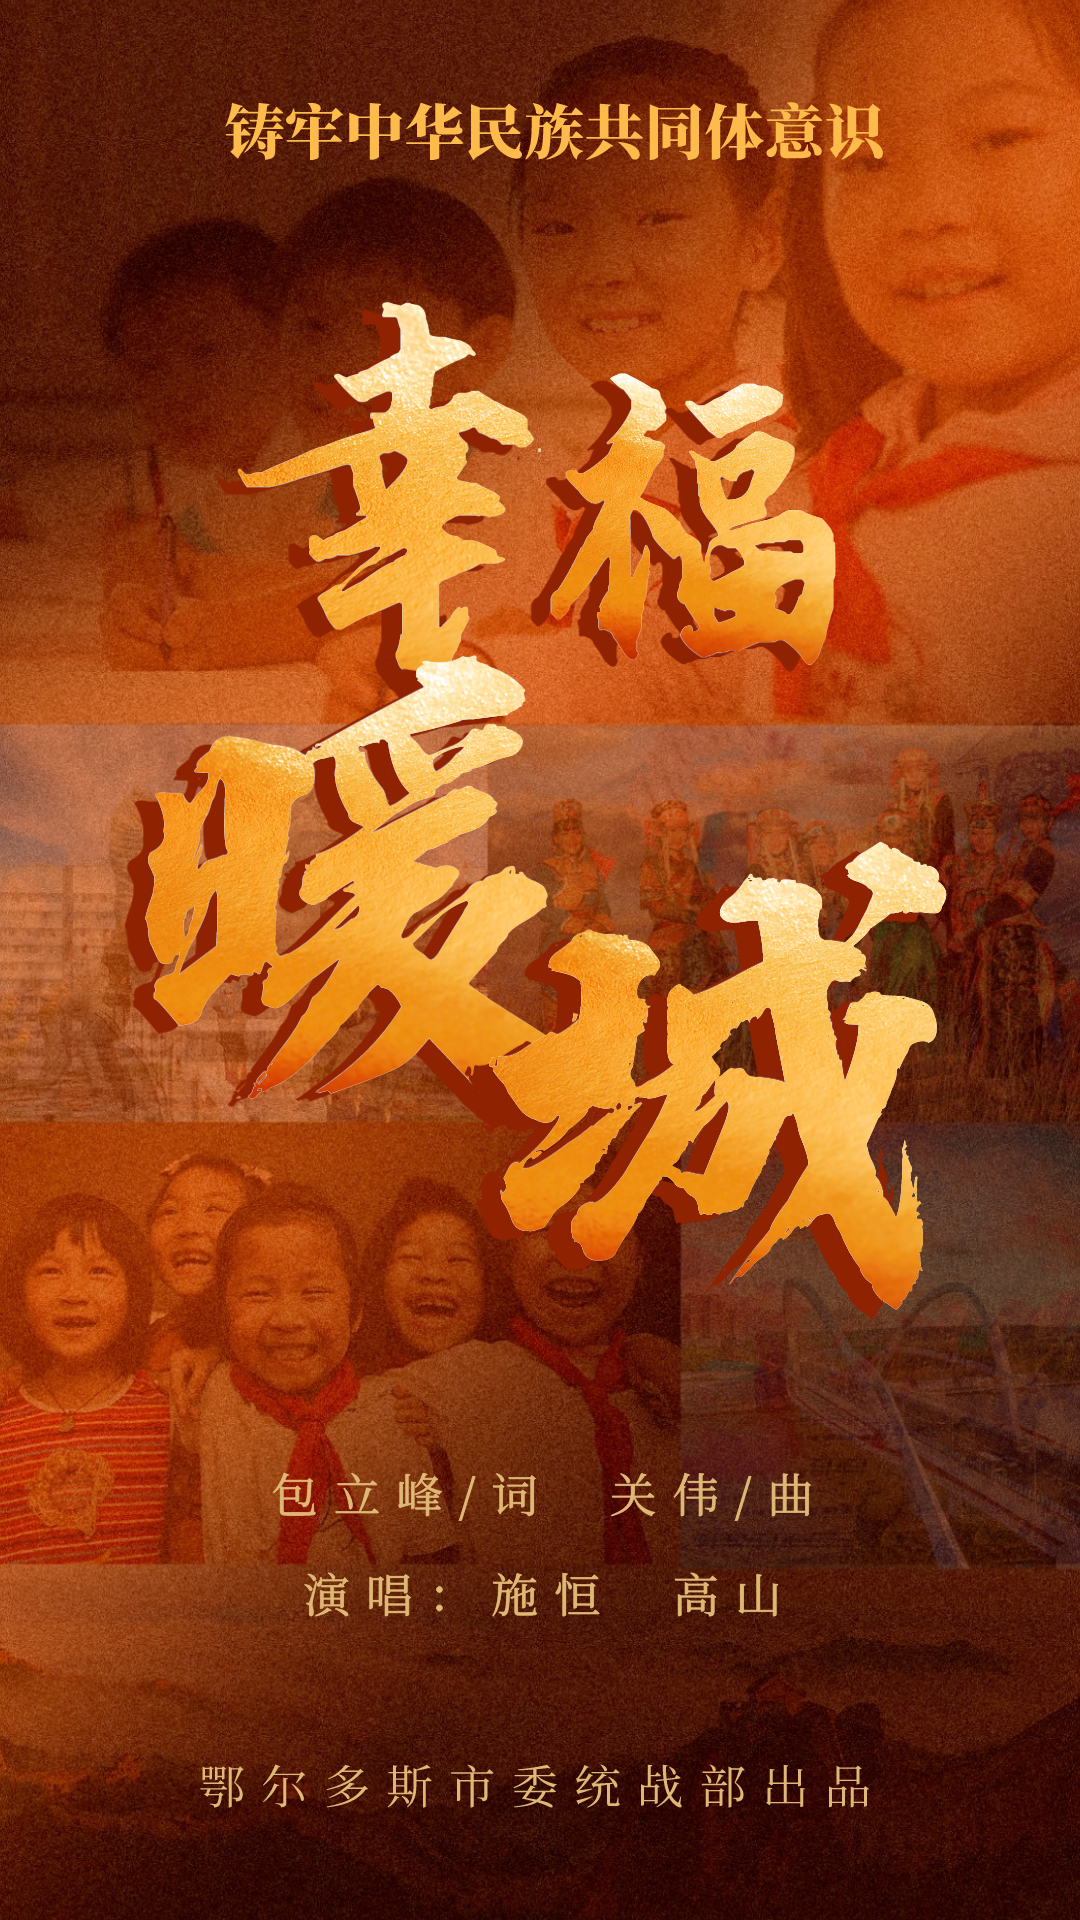 新歌首发！内蒙古鄂尔多斯市铸牢中华民族共同体意识主题歌曲《幸福暖城》发布